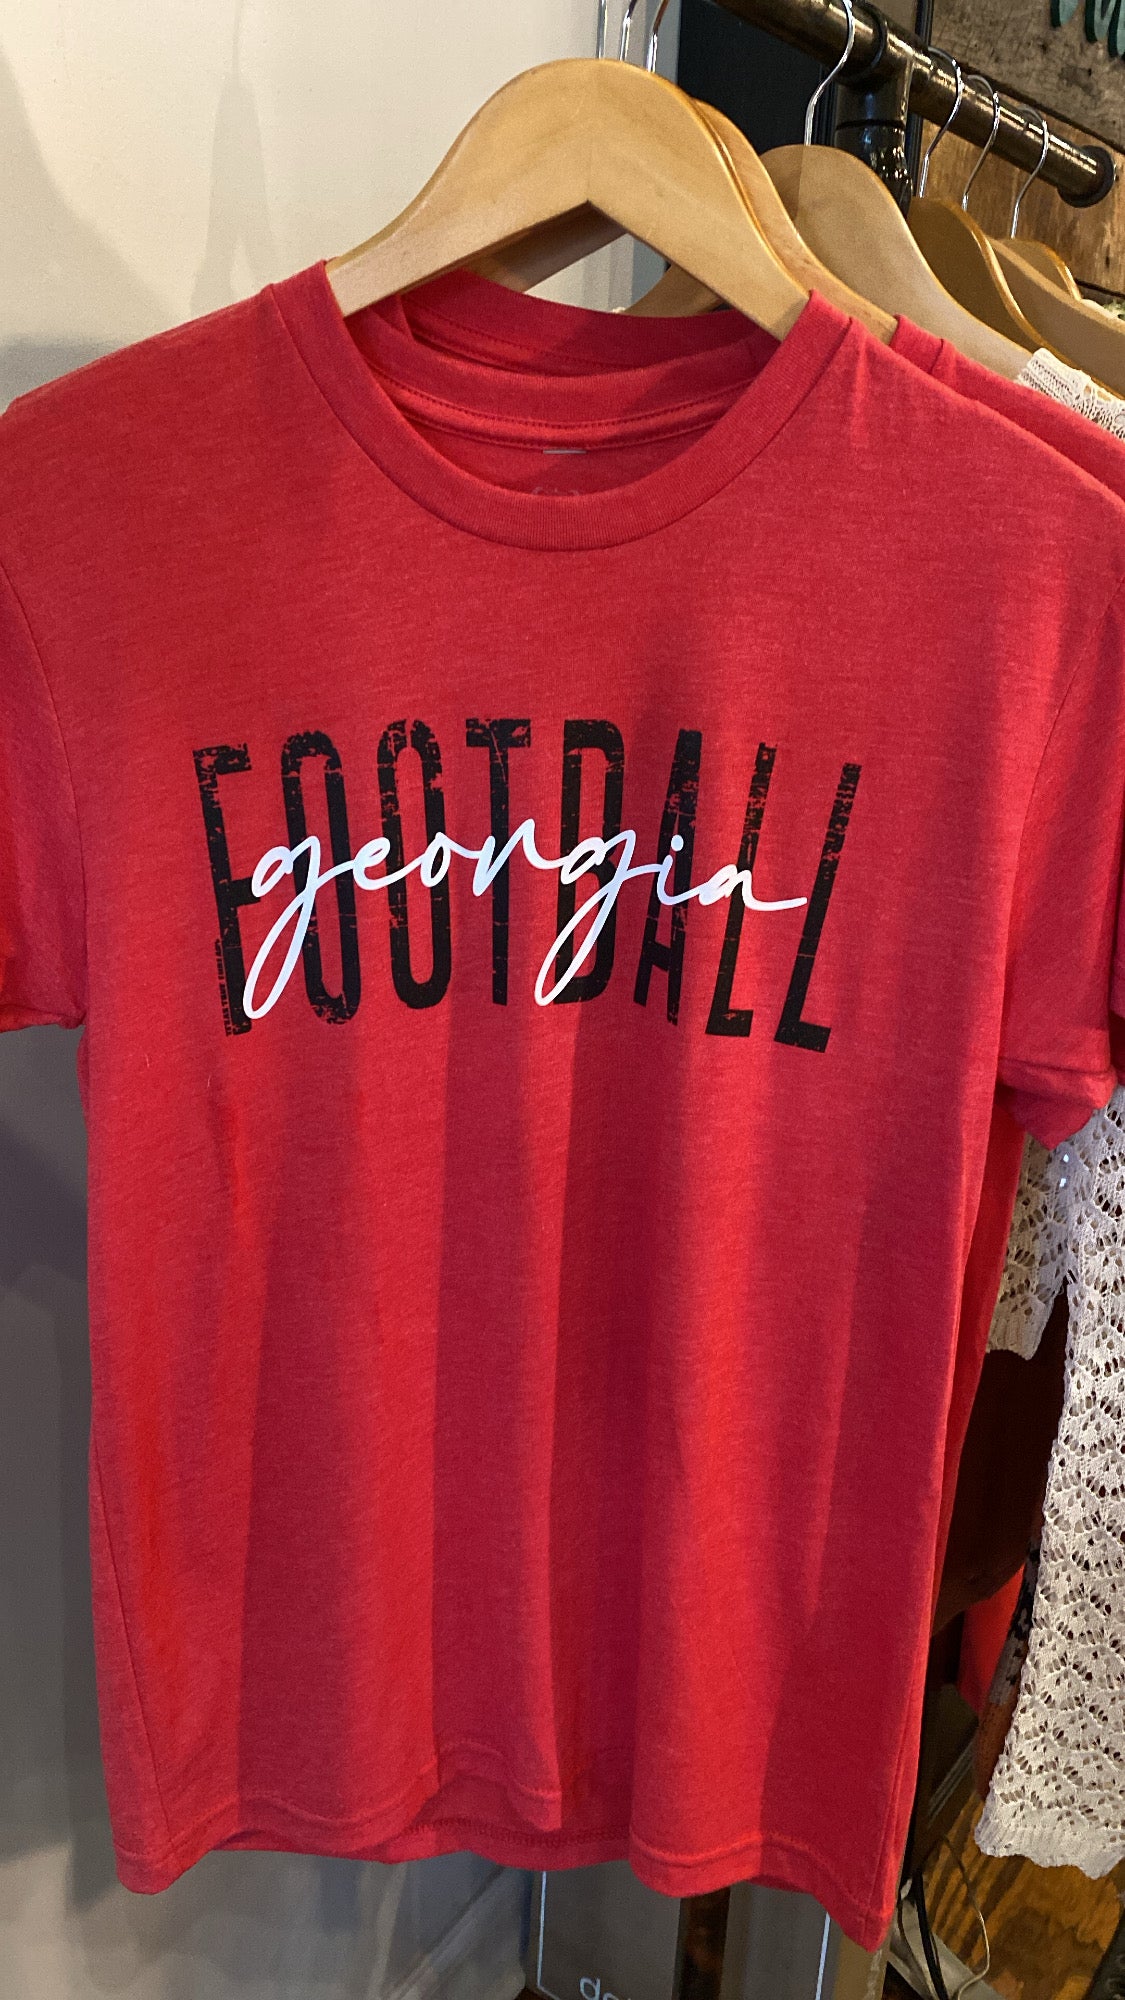 Georgia football tee 🏈